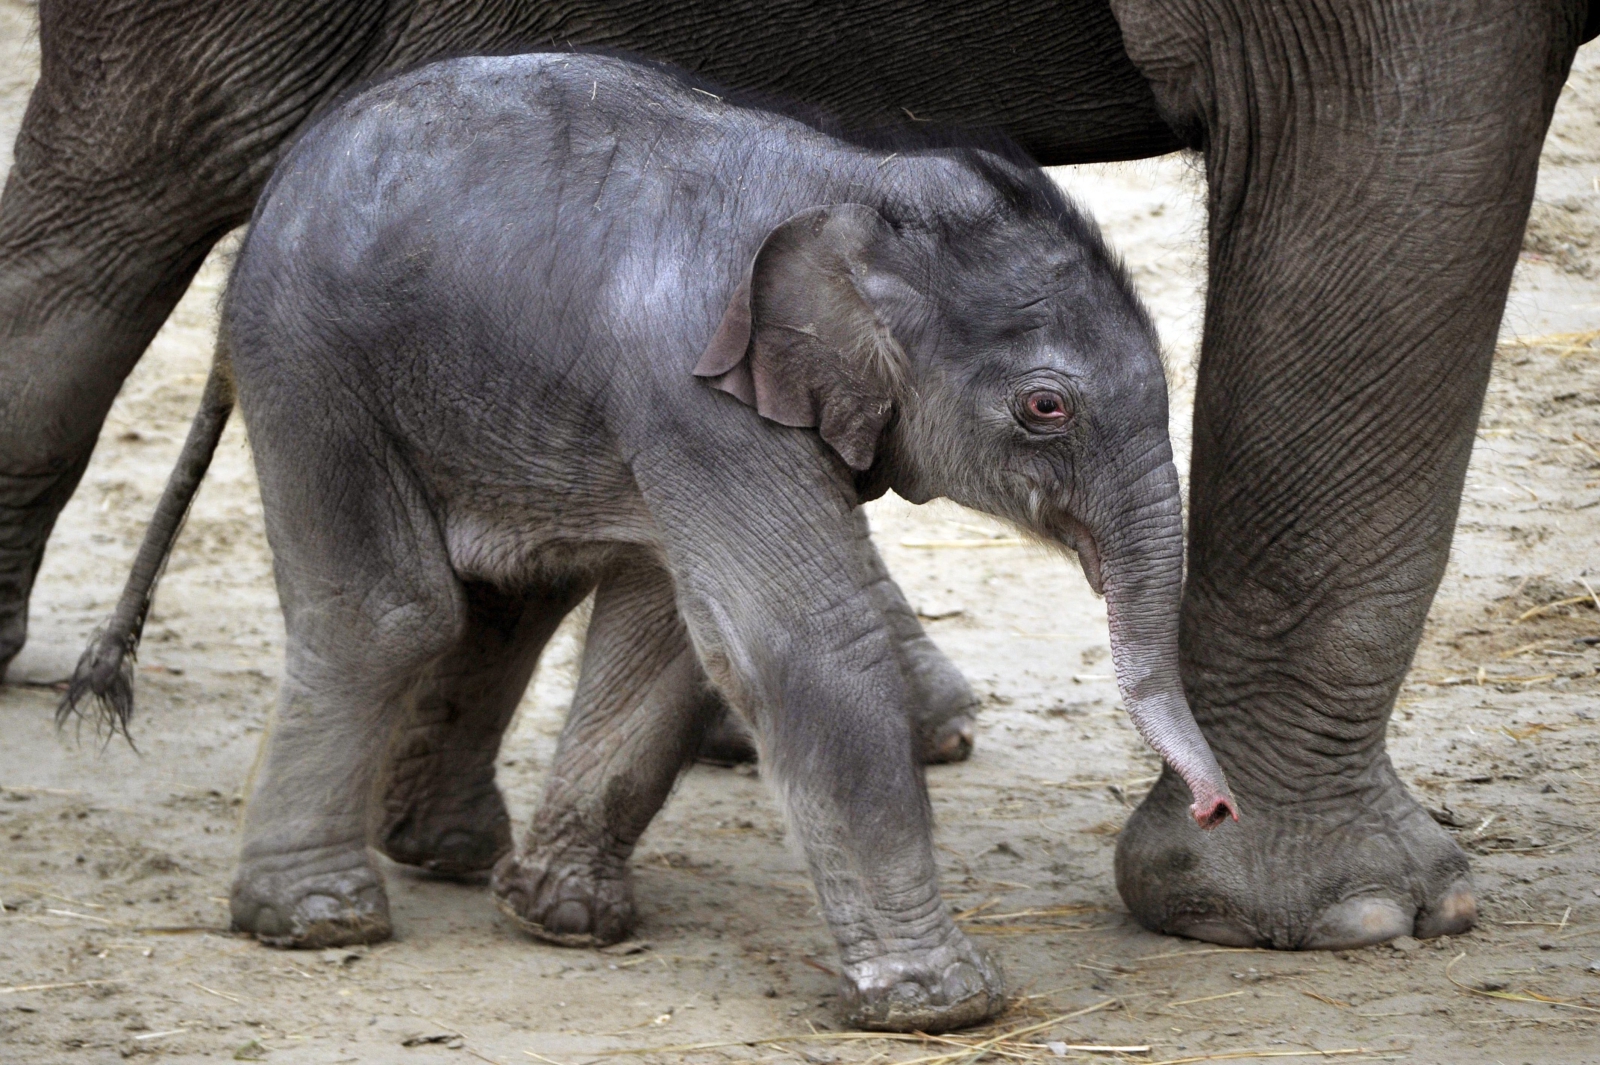 Narodziny słonia w budapesztańskim ZOO
Dostawca: PAP/EPA.